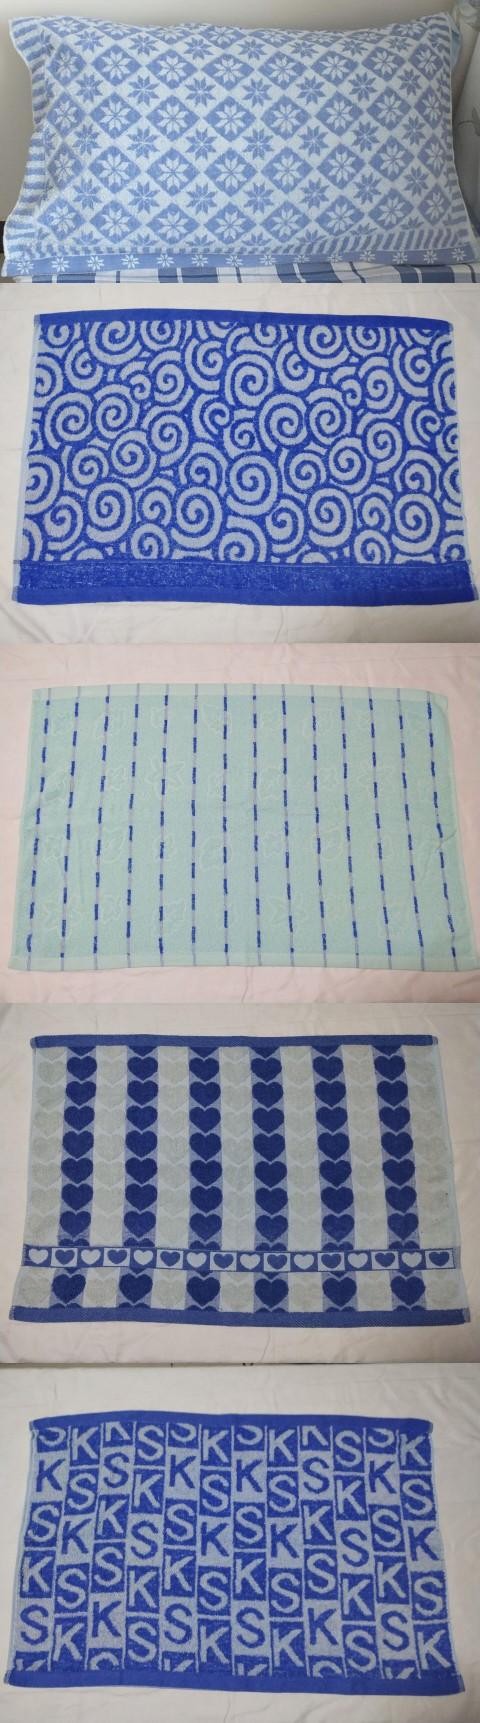 Sinh viên khăn gối màu xanh vải bông tinh khiết vải gối khăn đơn khăn gối dễ thương dải màu xanh tình yêu lõi khăn gối 2 cái - Khăn gối